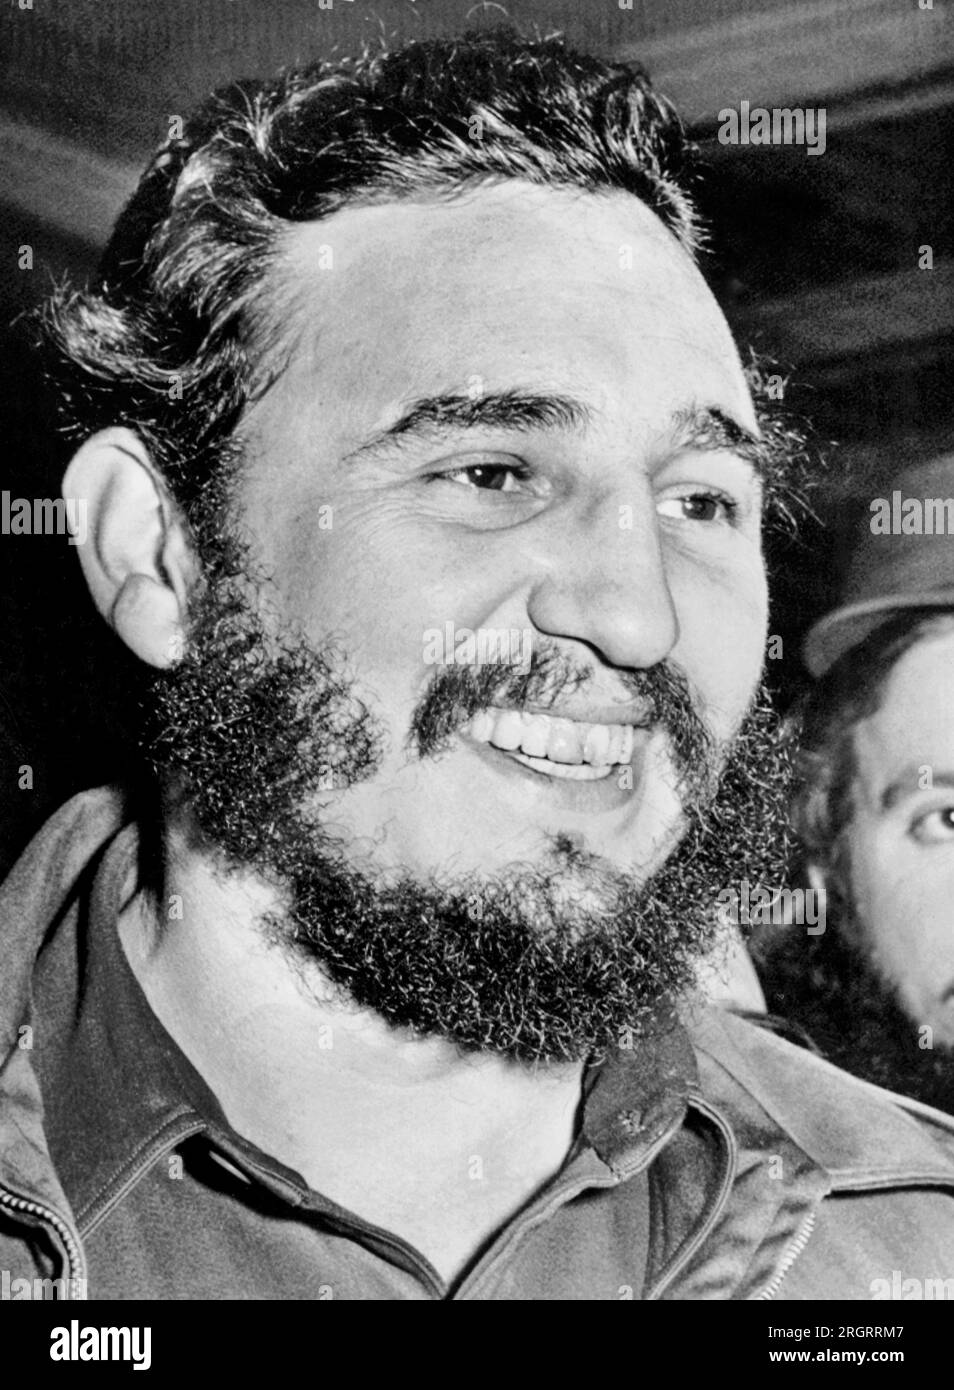 Washington, D.C.: 17 aprile 1959, il primo ministro cubano Fidel Castro sorride mentre entra nell'ambasciata cubana dopo un'accoglienza entusiasta da parte di una piccola folla all'aeroporto di Washington. Foto Stock